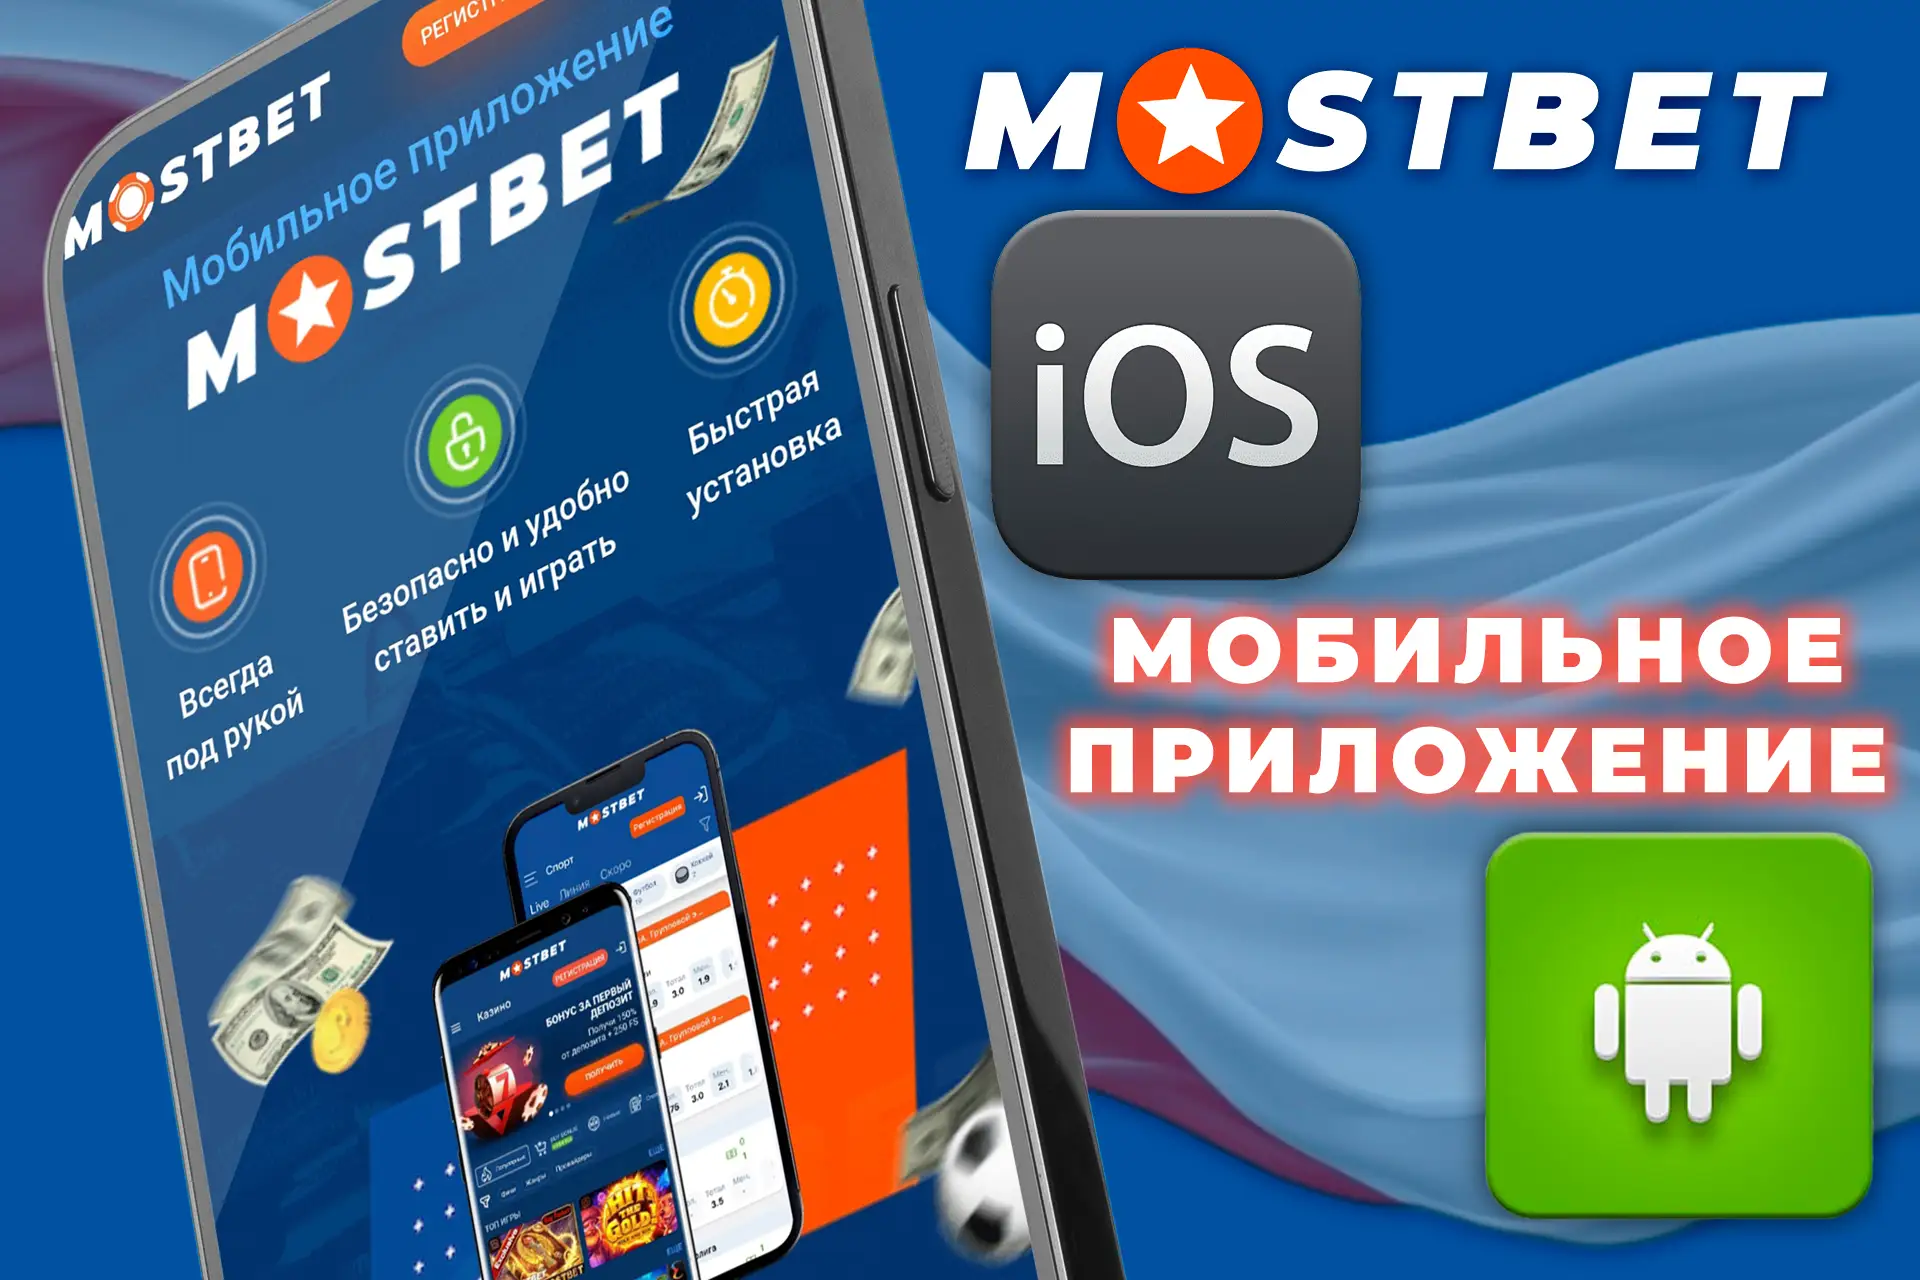 Многофункциональное мобильное приложение Mostbet